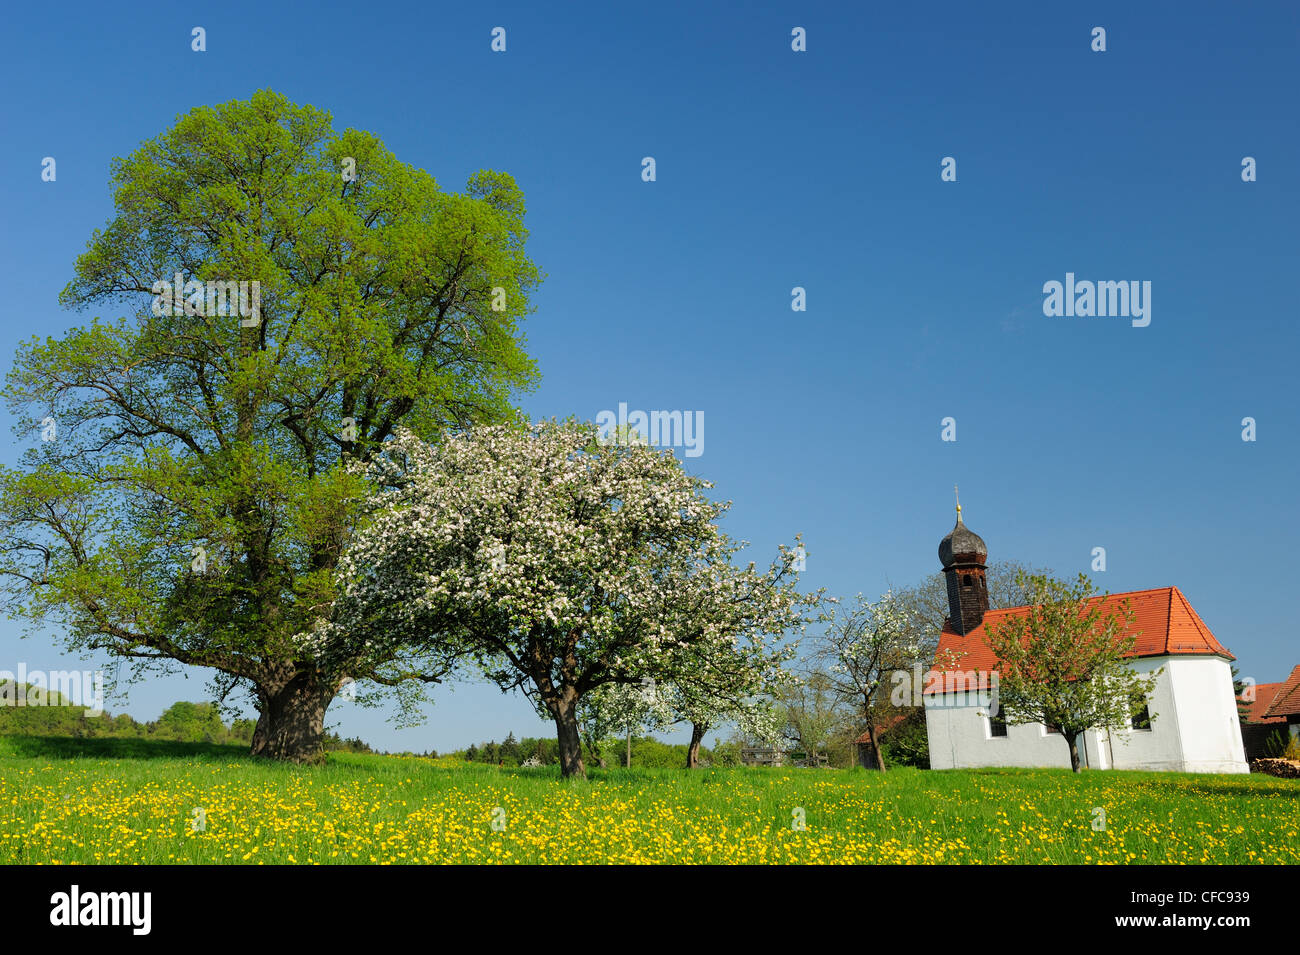 Kapelle stehen in blühenden Wiese mit Obstbäumen in Blüte, Upper Bavaria, Bayern, Deutschland, Europa Stockfoto